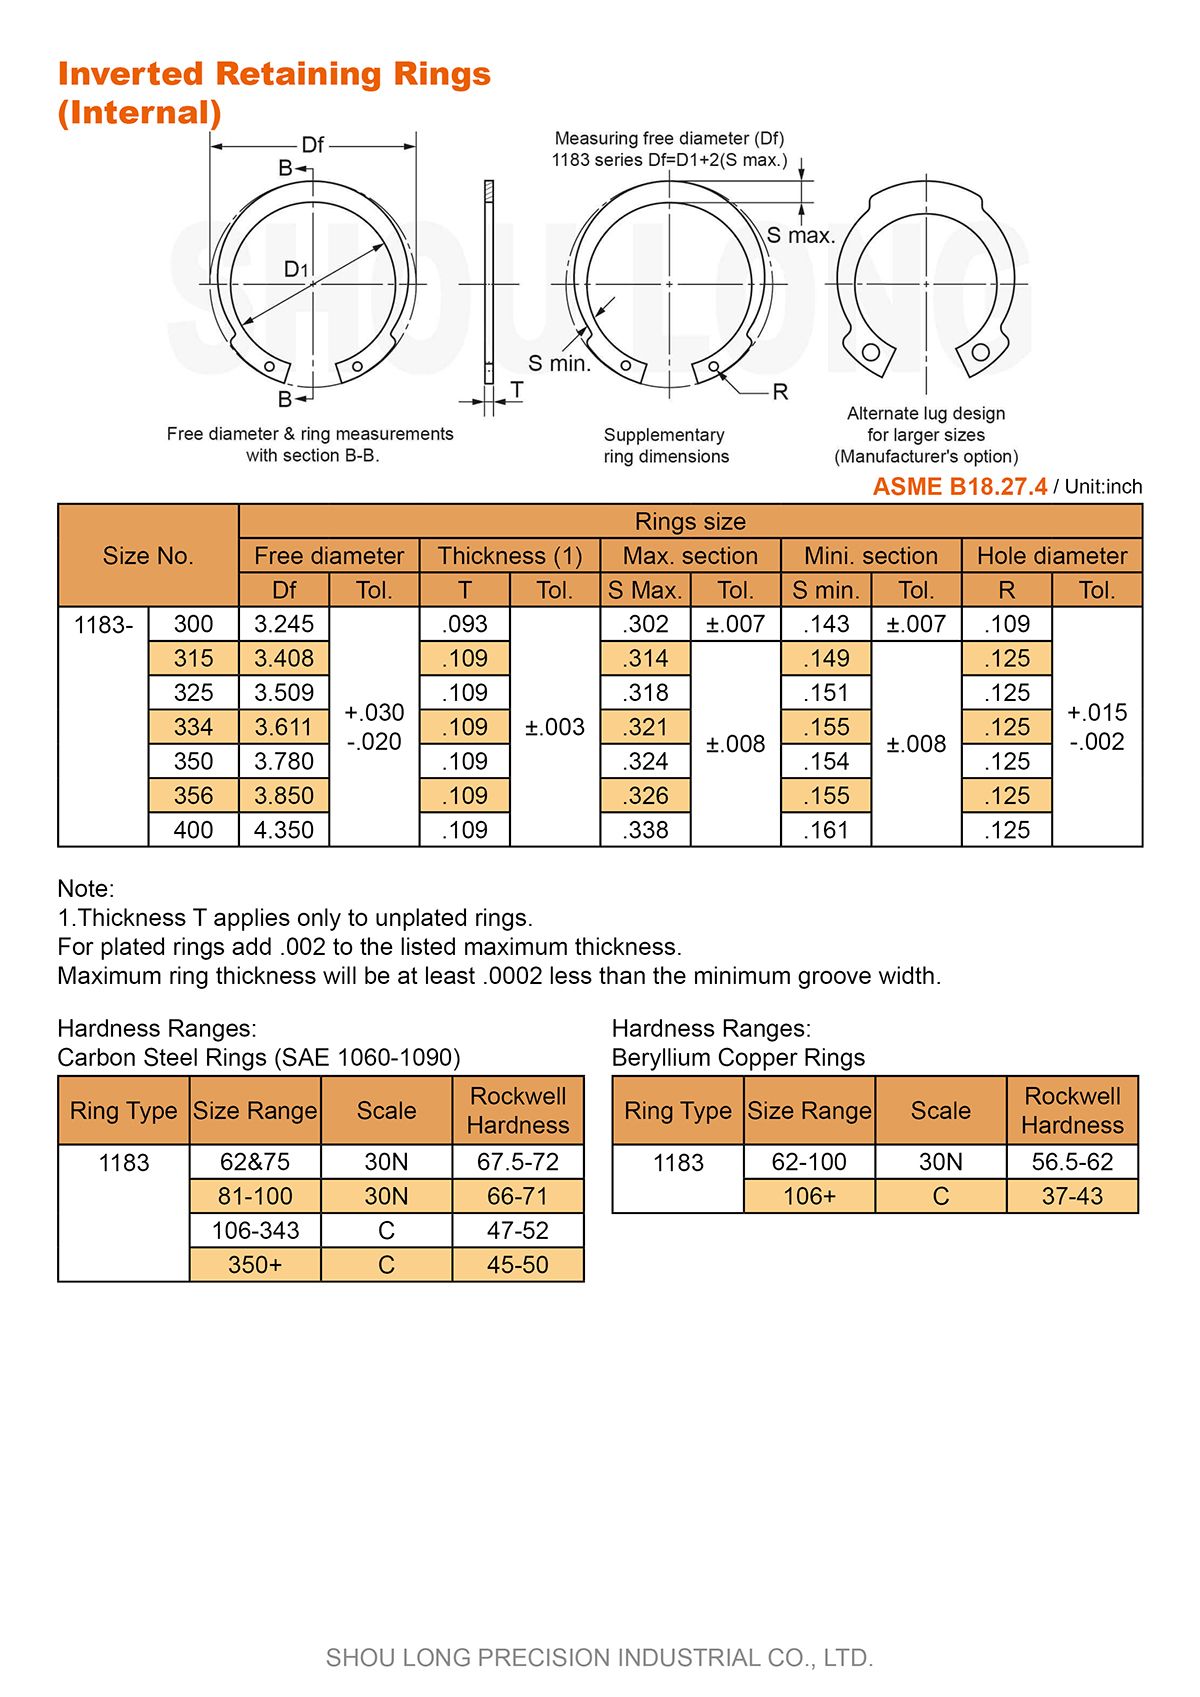 Specifiche degli anelli di trattenimento invertiti in pollice per fori ASME/ANSI B18.27.4 - 2